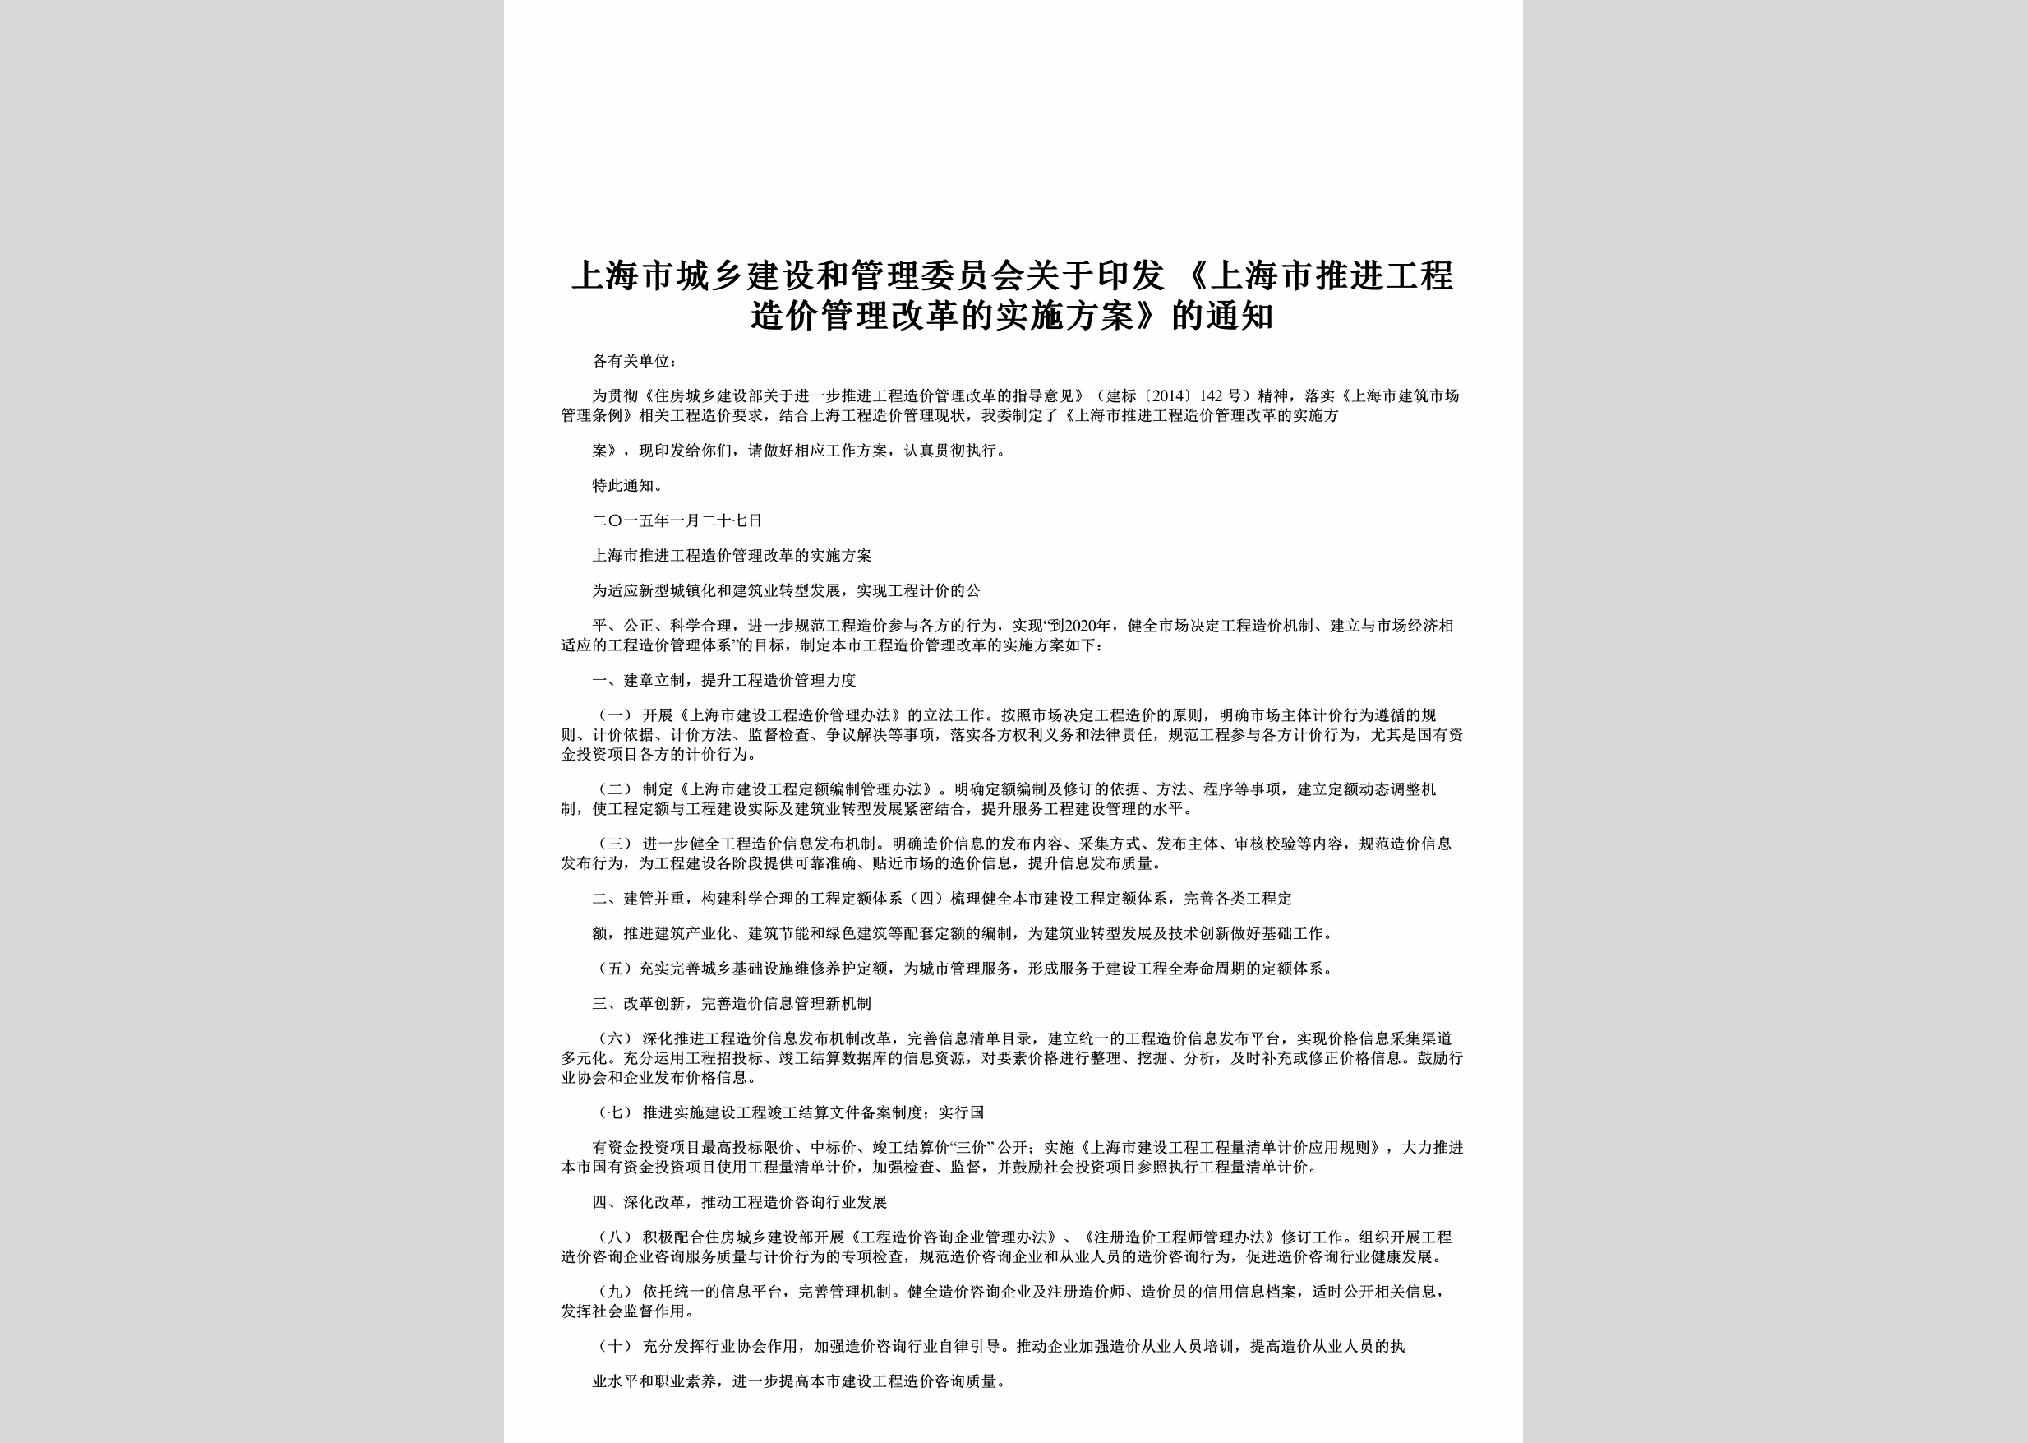 SH-GLGGSSFA-2015：关于印发《上海市推进工程造价管理改革的实施方案》的通知